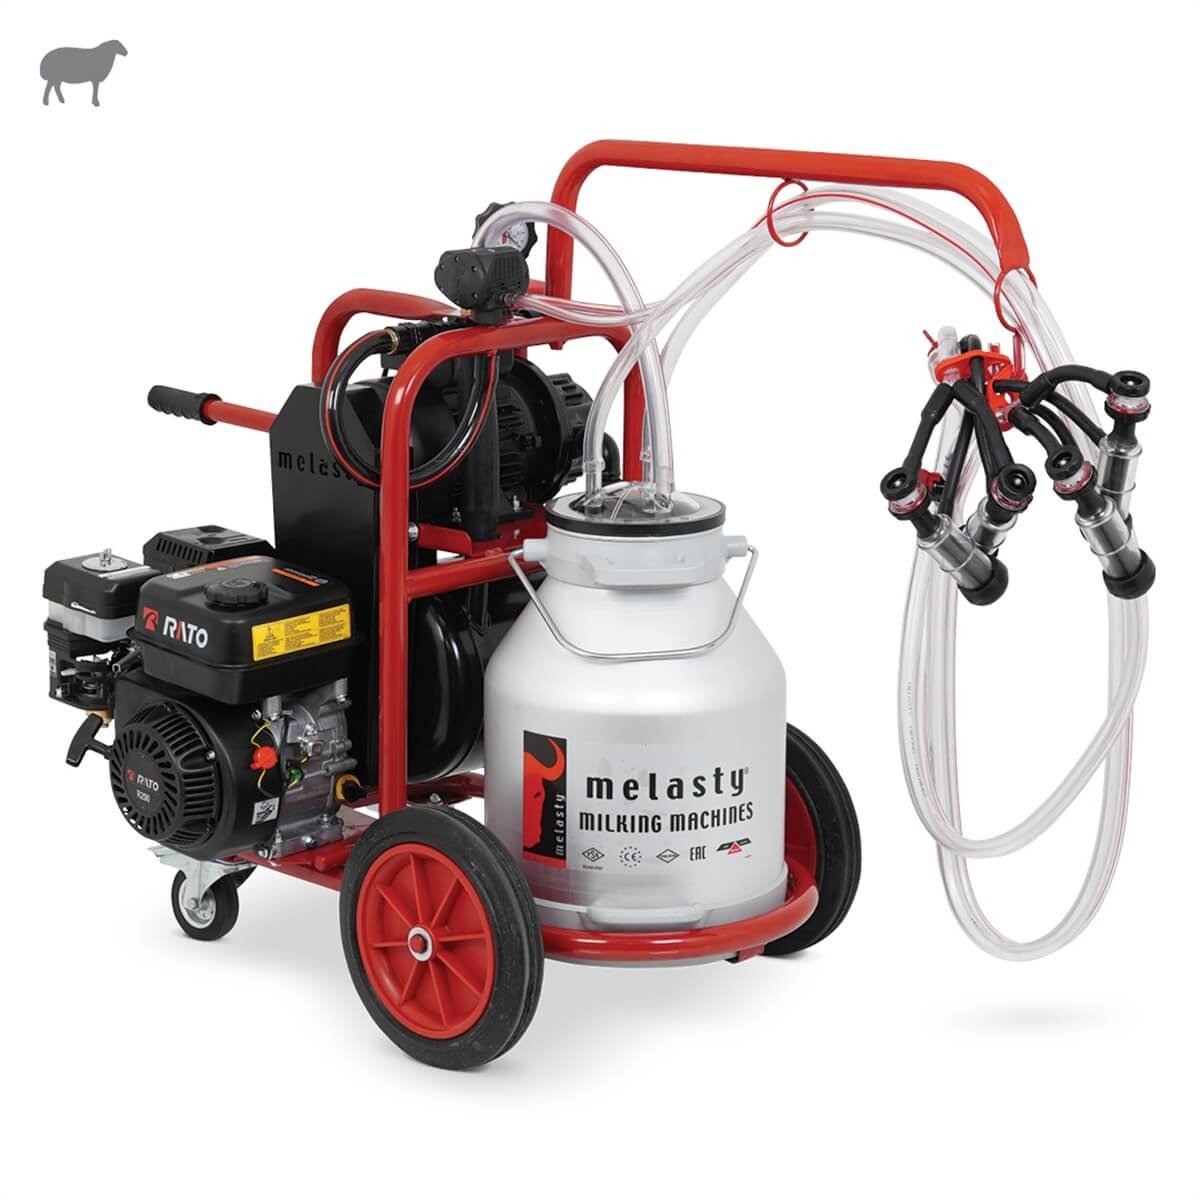 Melasty İkili Koyun Süt Sağma Makinesi (Alüminyum Güğüm - Kauçuk Memelik)  (Benzinli) (Yağlı Pompa) | Cimritilki.com